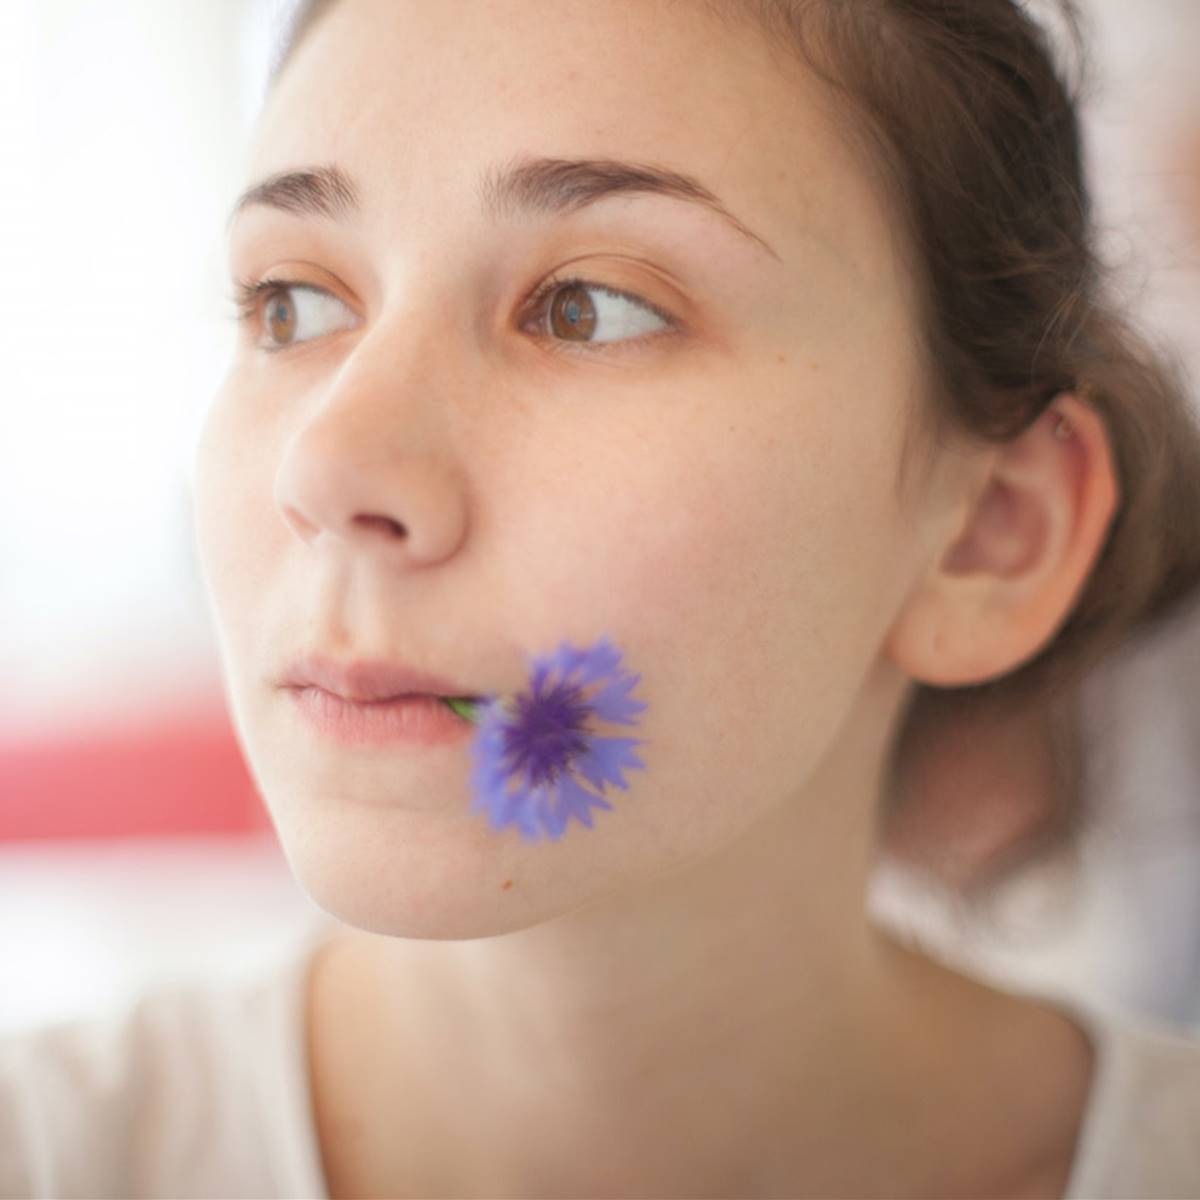 Chica con flor azul en la boca